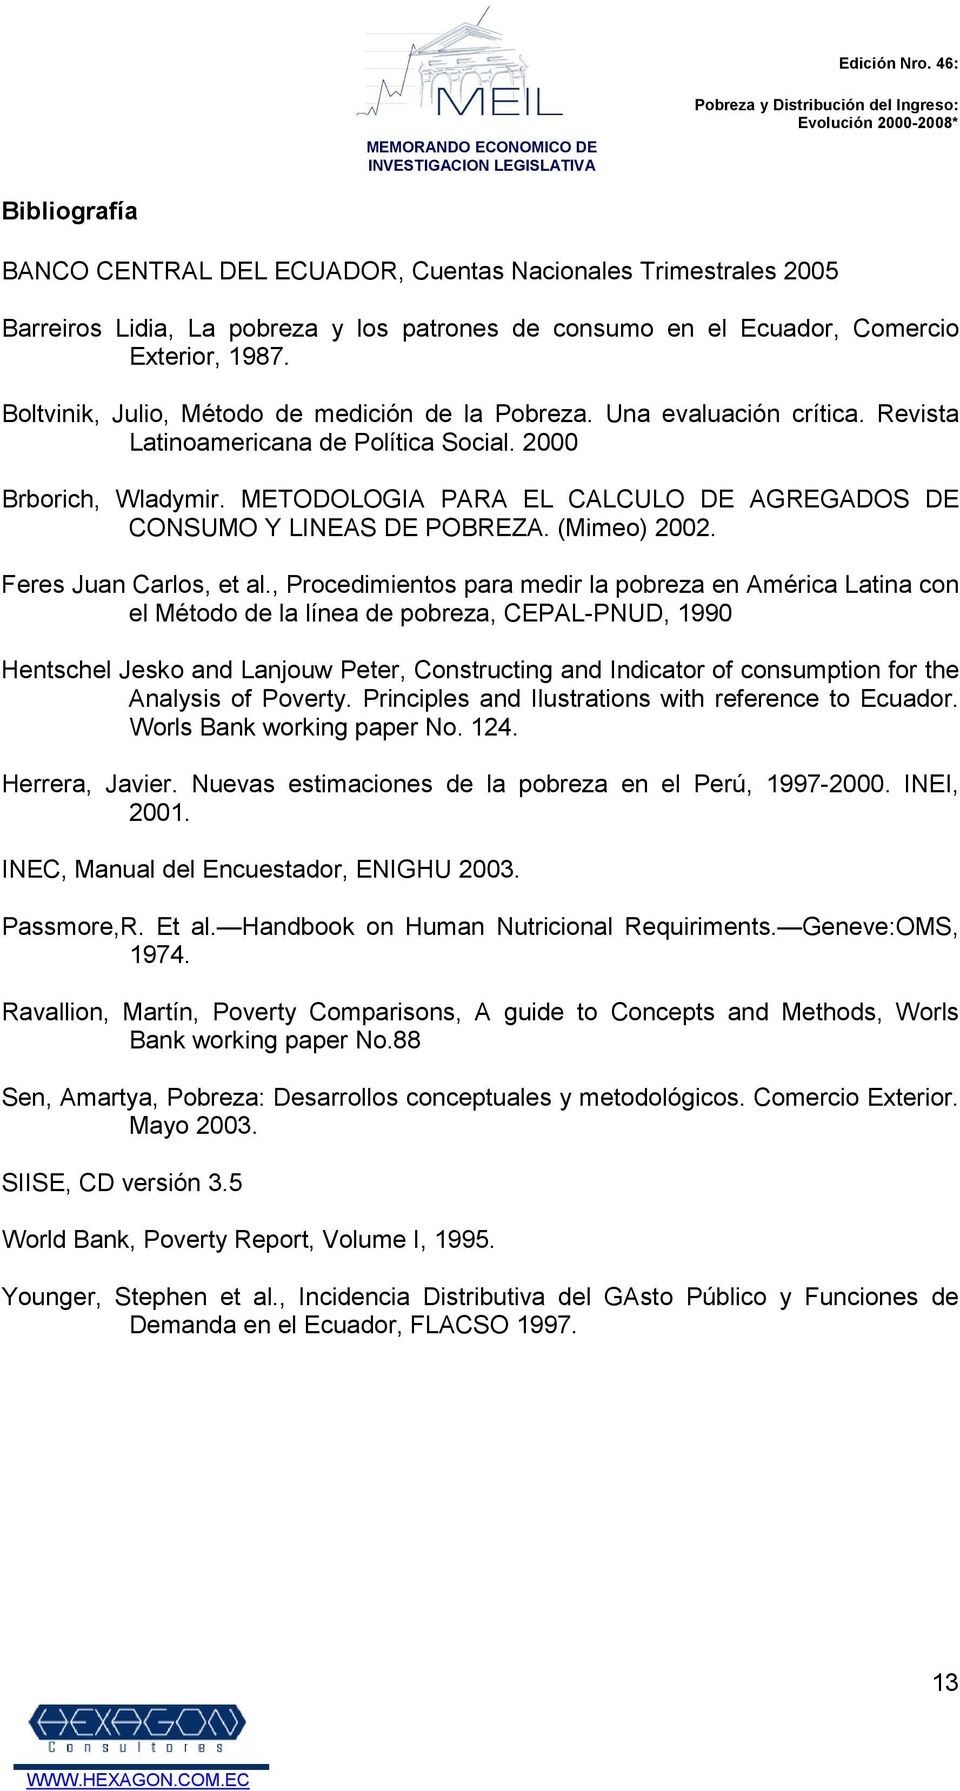 METODOLOGIA PARA EL CALCULO DE AGREGADOS DE CONSUMO Y LINEAS DE POBREZA. (Mimeo) 22. Feres Juan Carlos, et al.